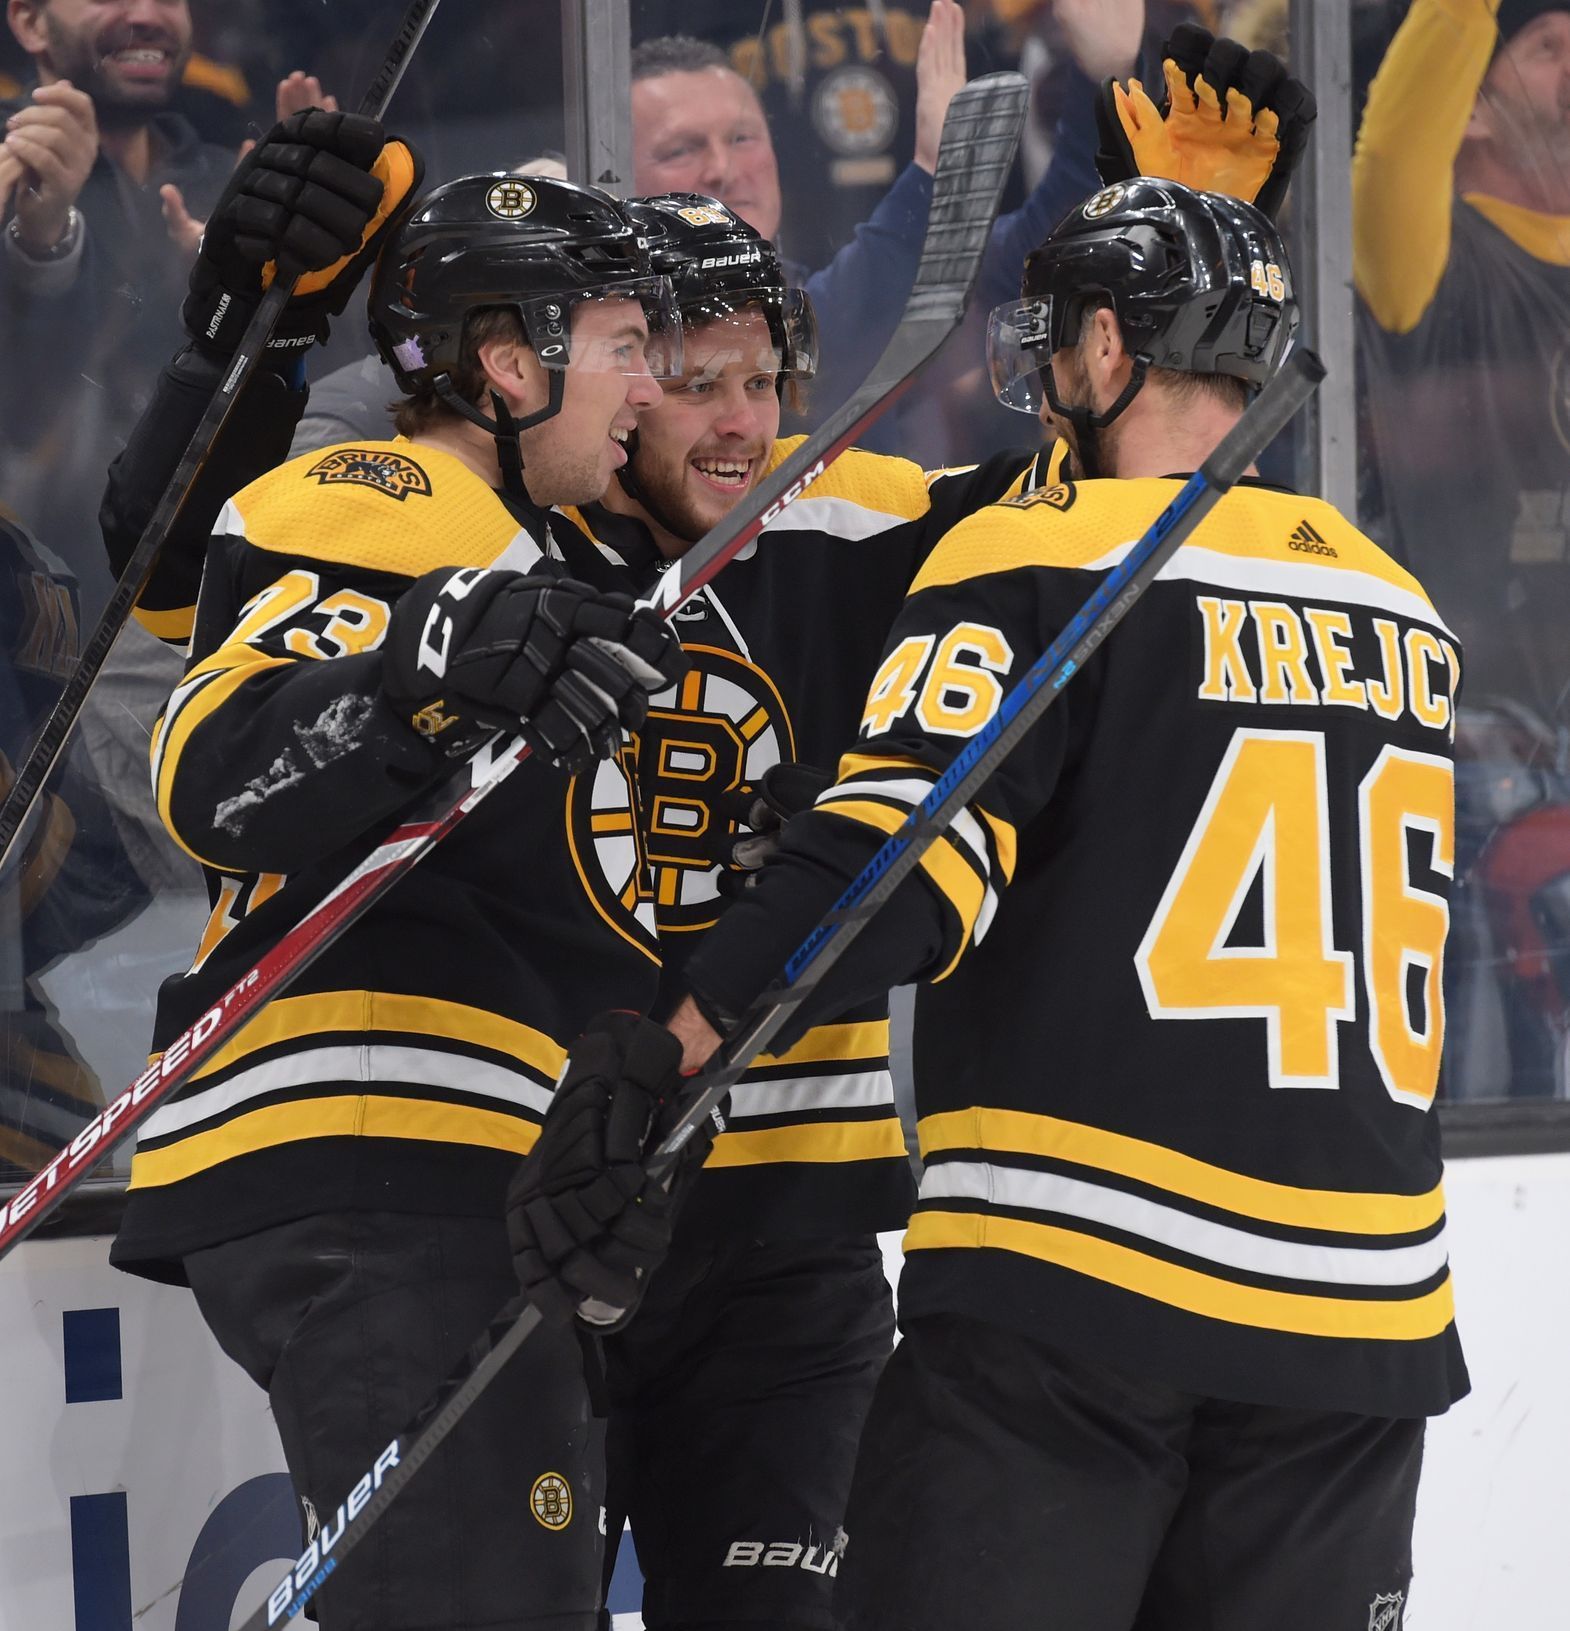 NHL 2019/20, Boston - Washington: David Pastrňák oslavuje svůj gól s Charliem McAvoyem a Davidem Krejčím